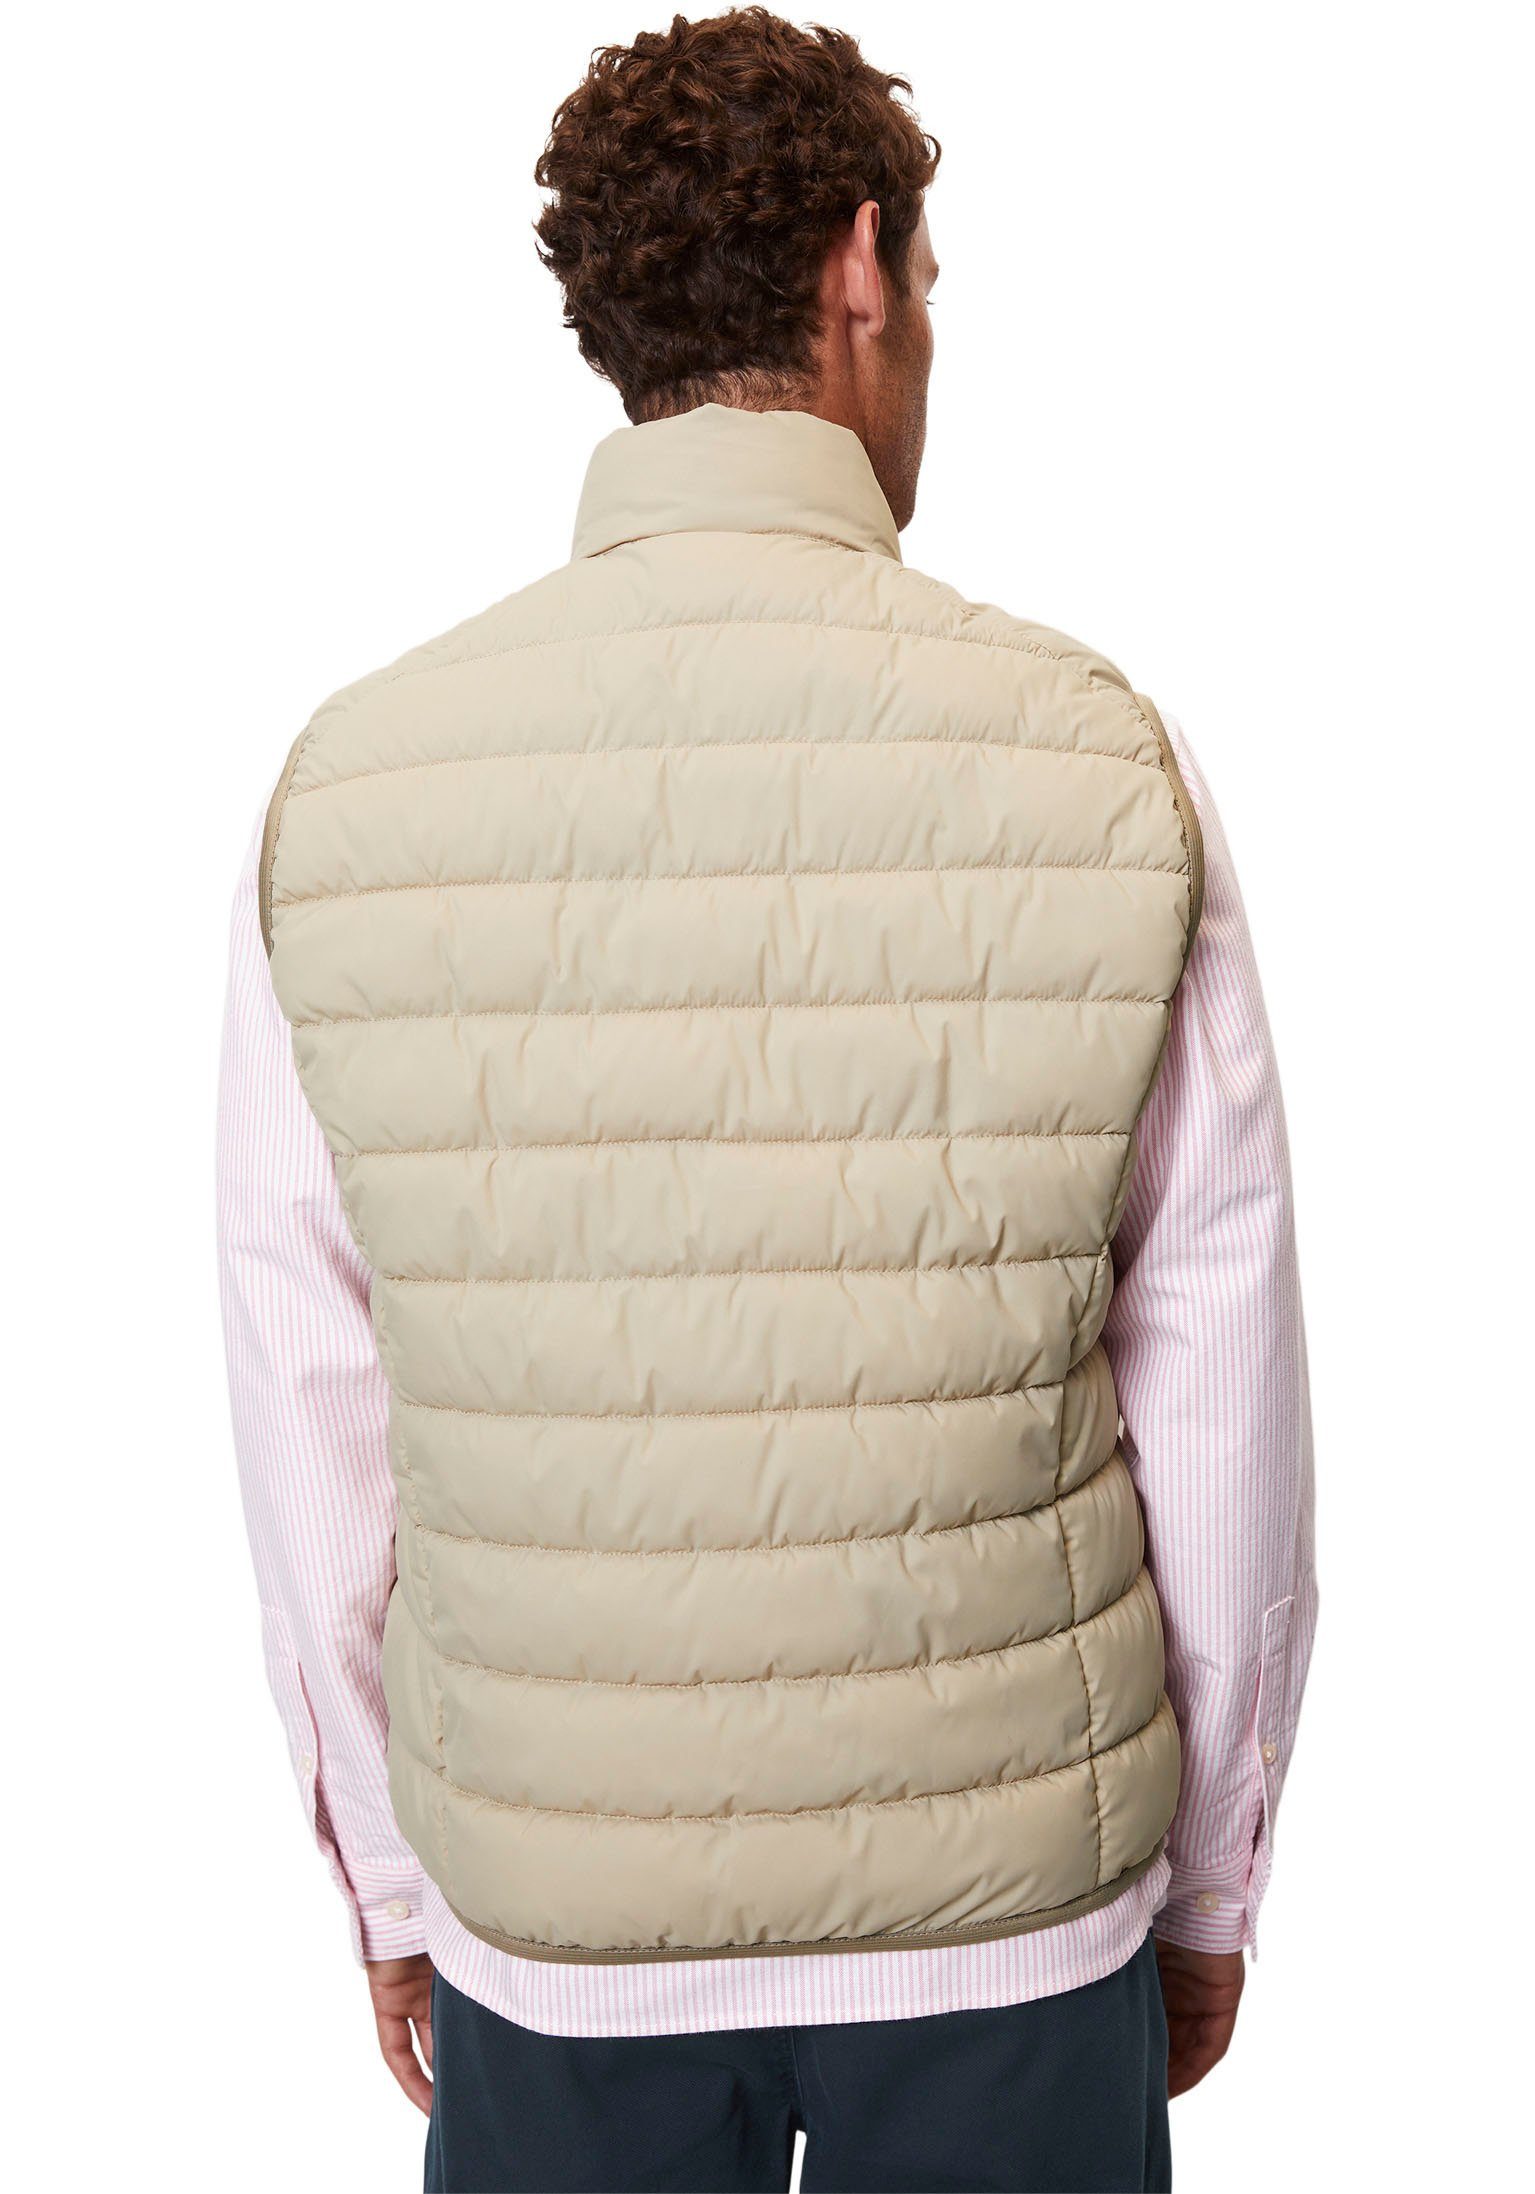 O'Polo stand-up Vest, Marc cream jonesboro Oberfläche sdnd, collar wasserabweisender mit Steppweste